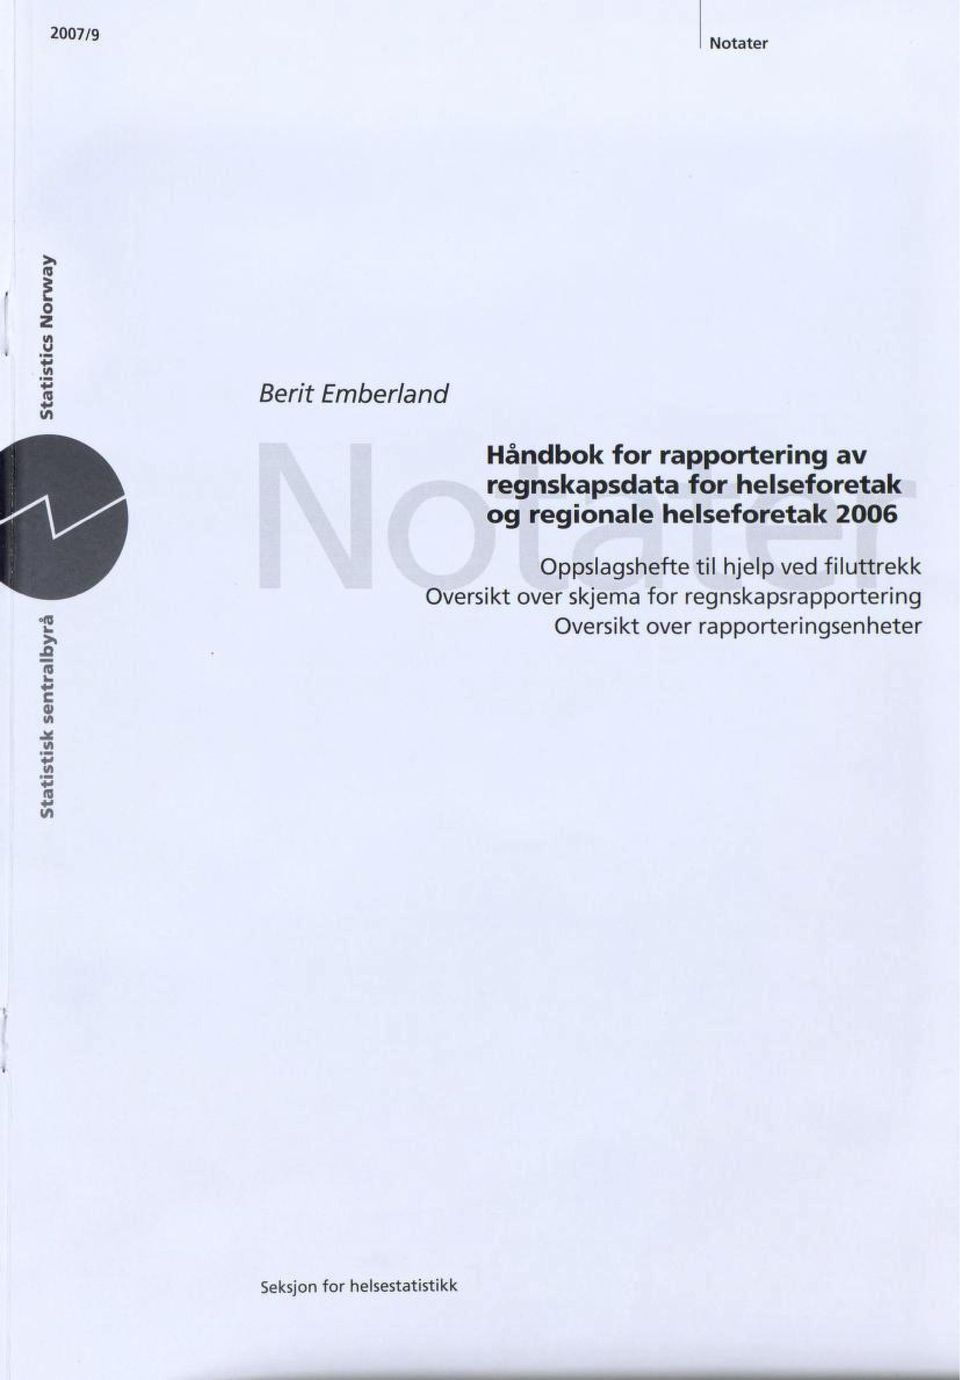 2006 Oppslagshefte til hjelp ved filuttrekk Oversikt over skjema for